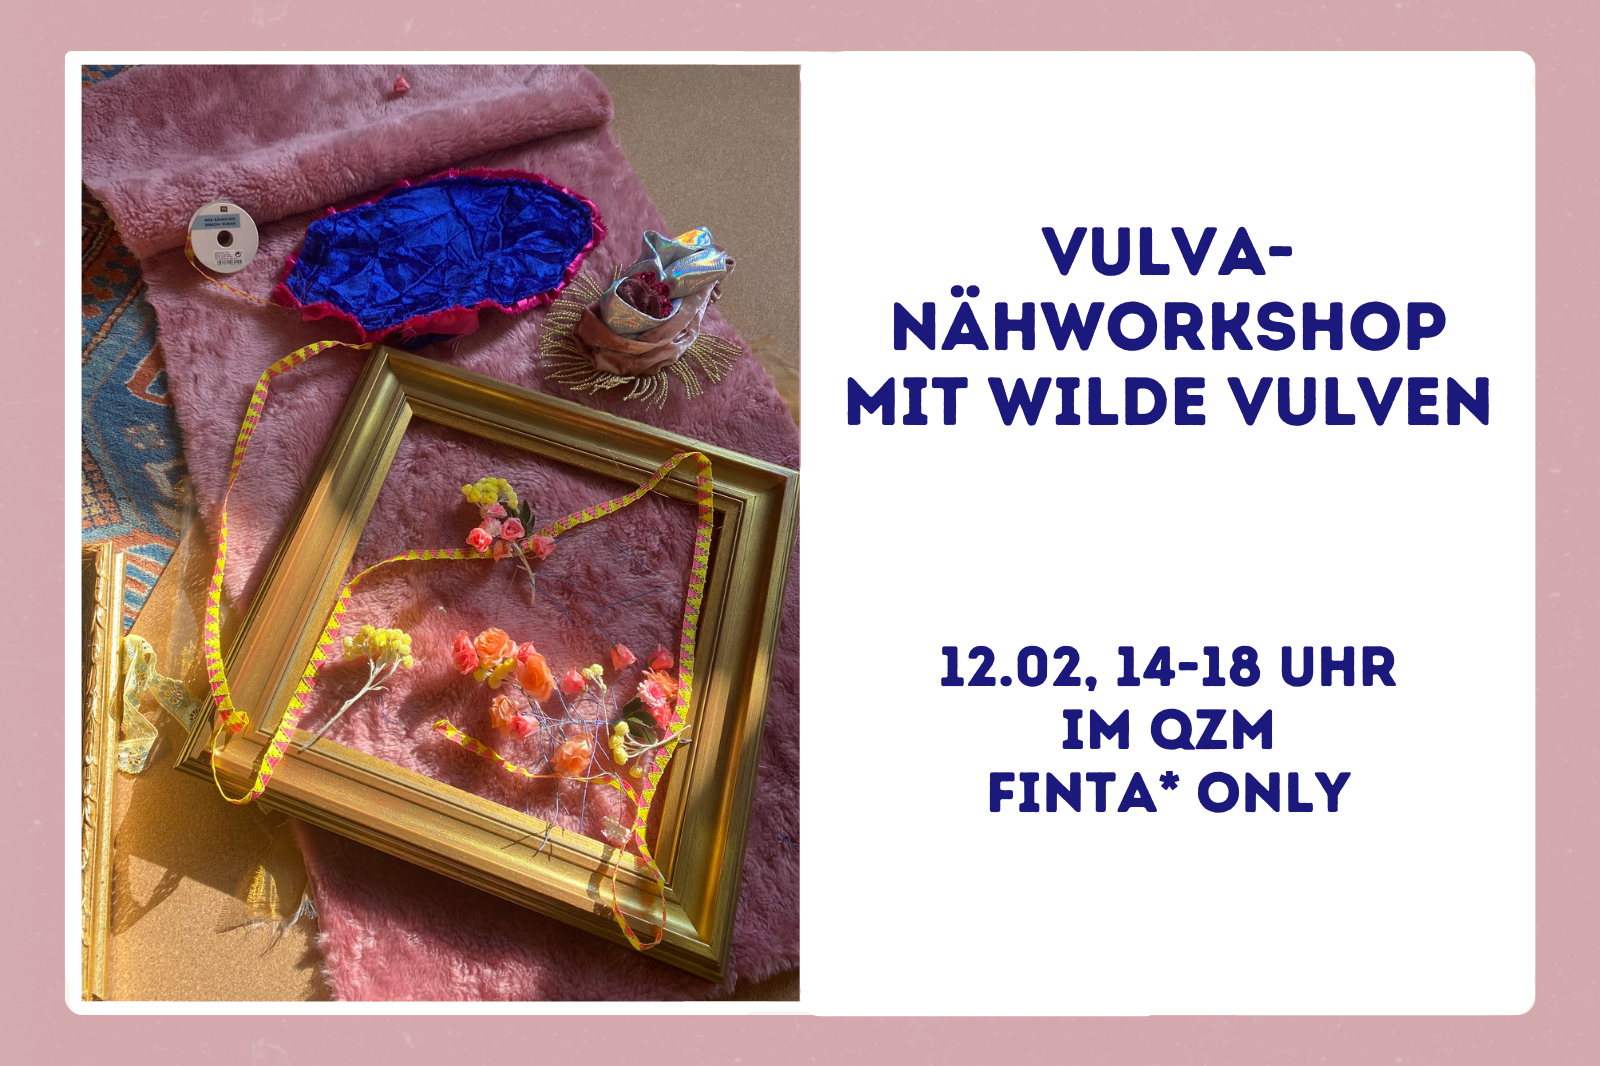 Vulva- Nähworkshop mit "Wilde Vulven" am 12.02.2023 von 14 bis 18 Uhr im Queeren Zentrum Mannheim. FINTA* only!